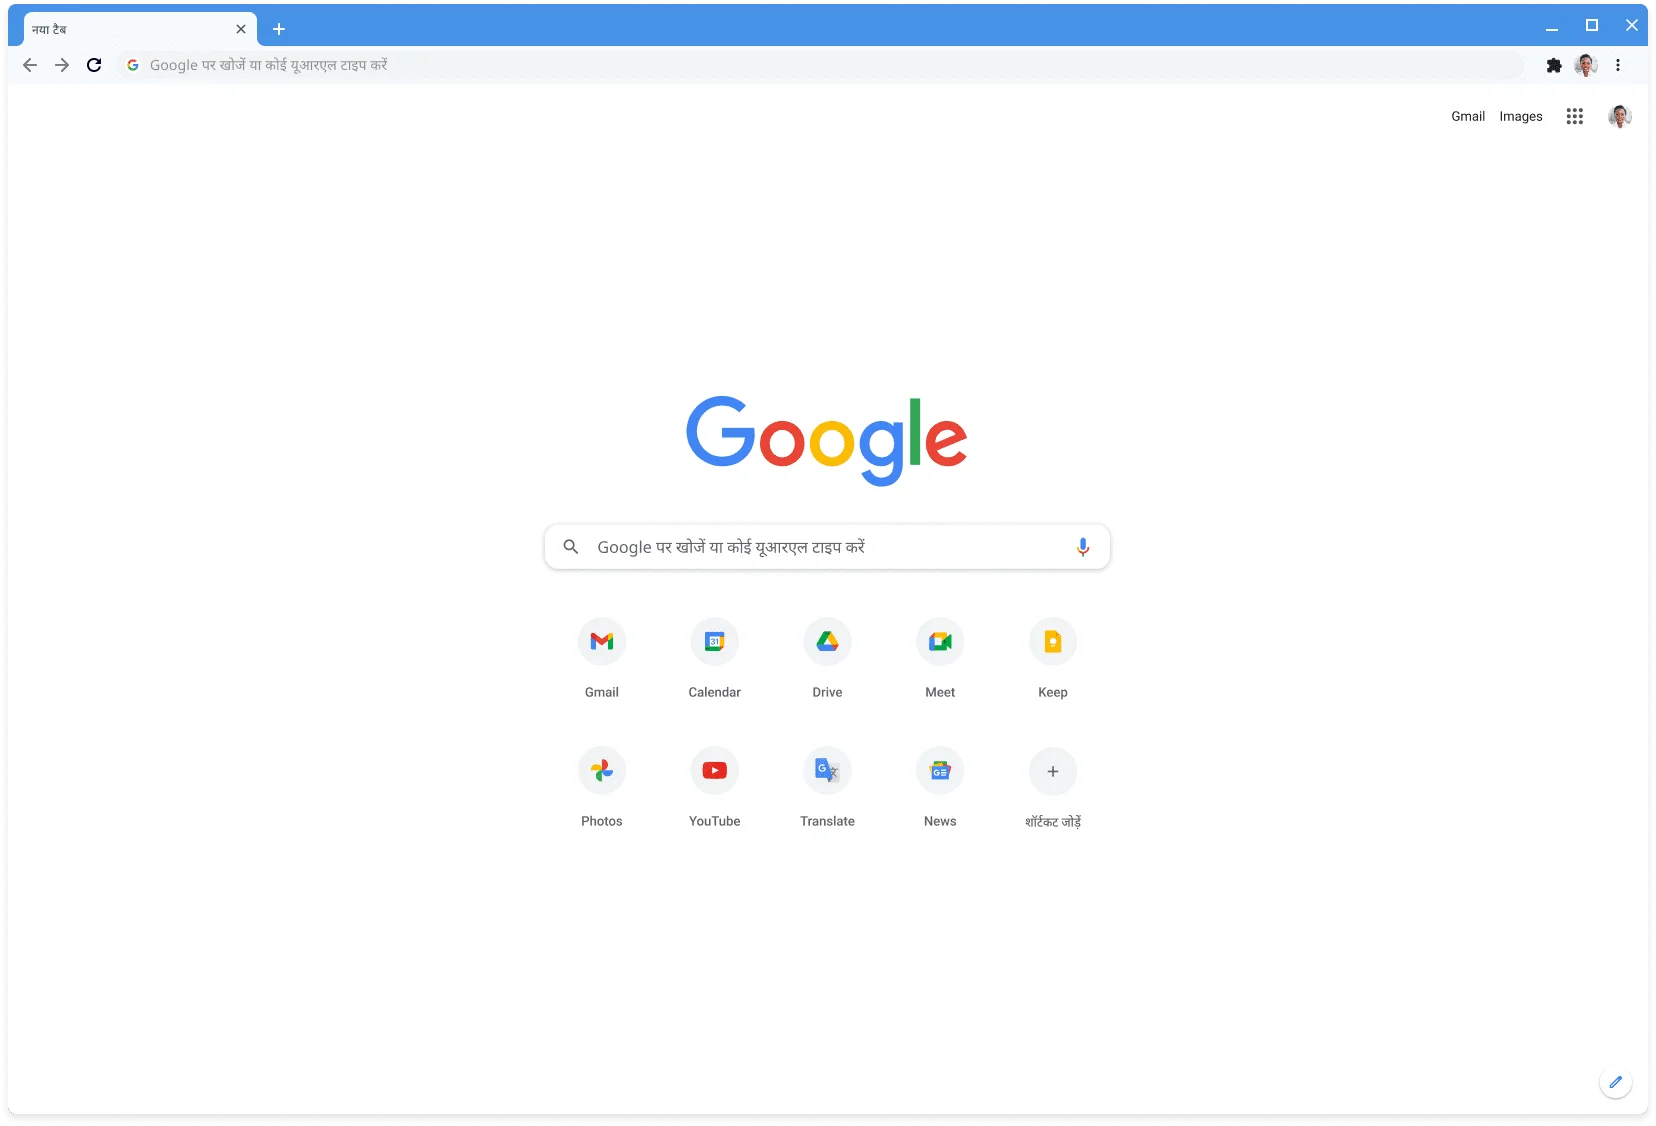 Chrome ब्राउज़र की विंडो, जिस पर क्लासिक थीम में Google.com साइट दिख रही है.